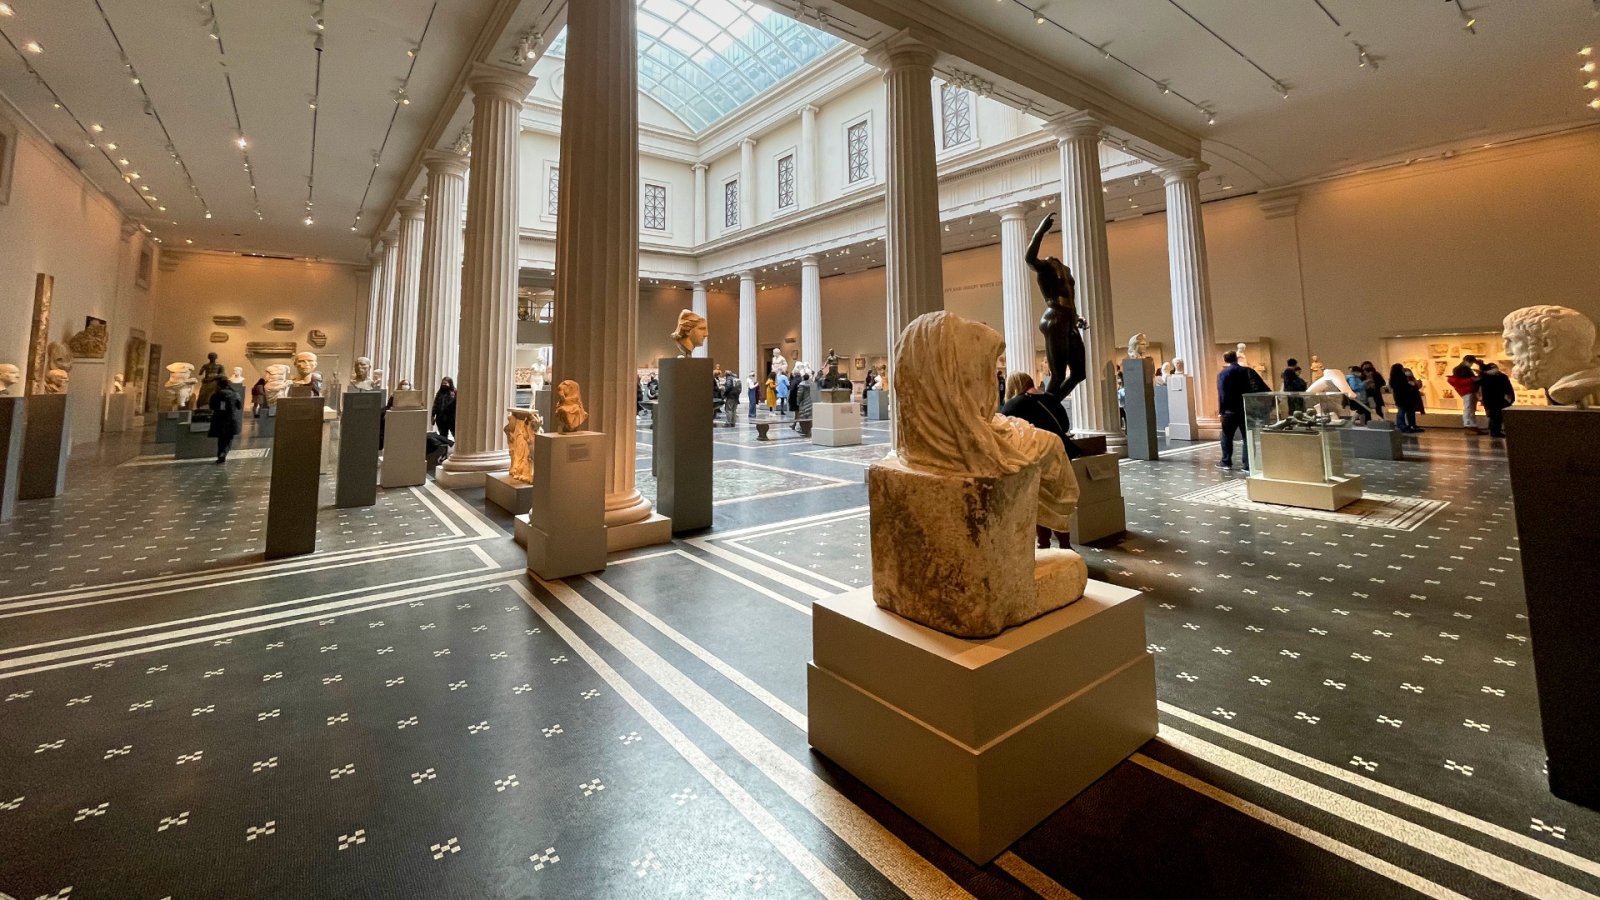 Met - Yhdysvaltain taidemuseossa kävijöitä on vähentynyt 1,7 miljoonalla viime aikoina eniten